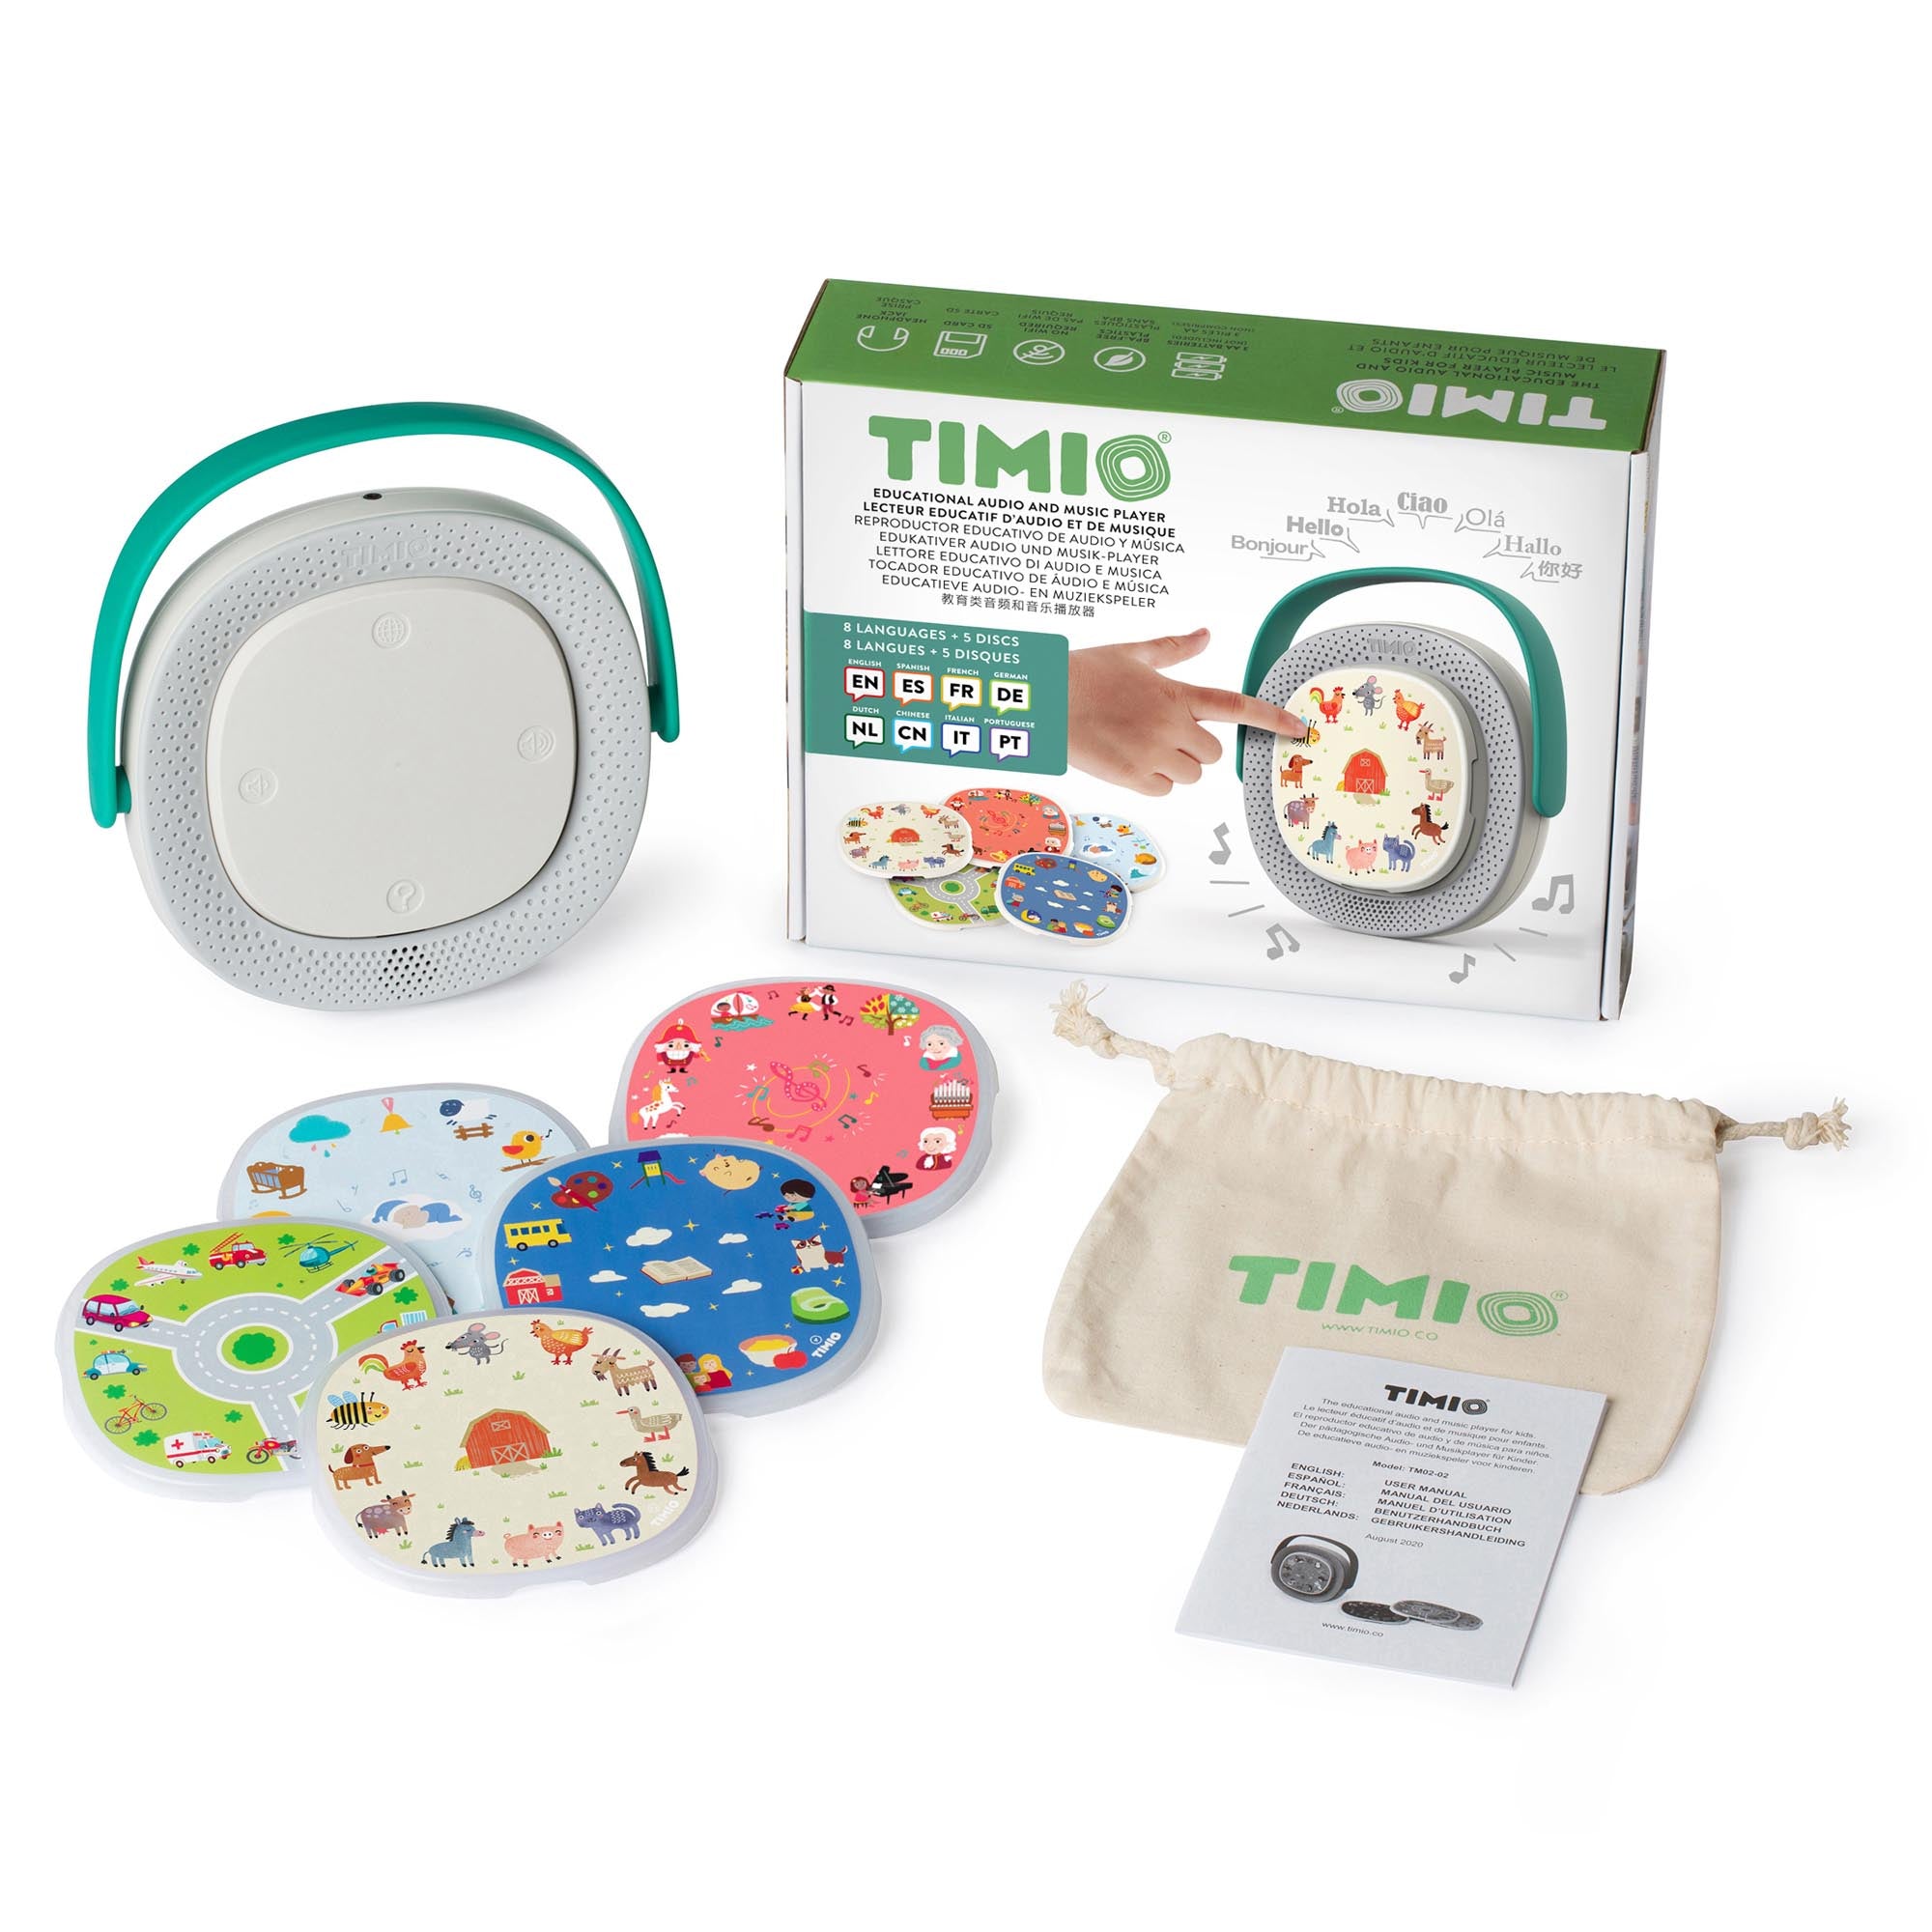 Timio - player + 5 discs